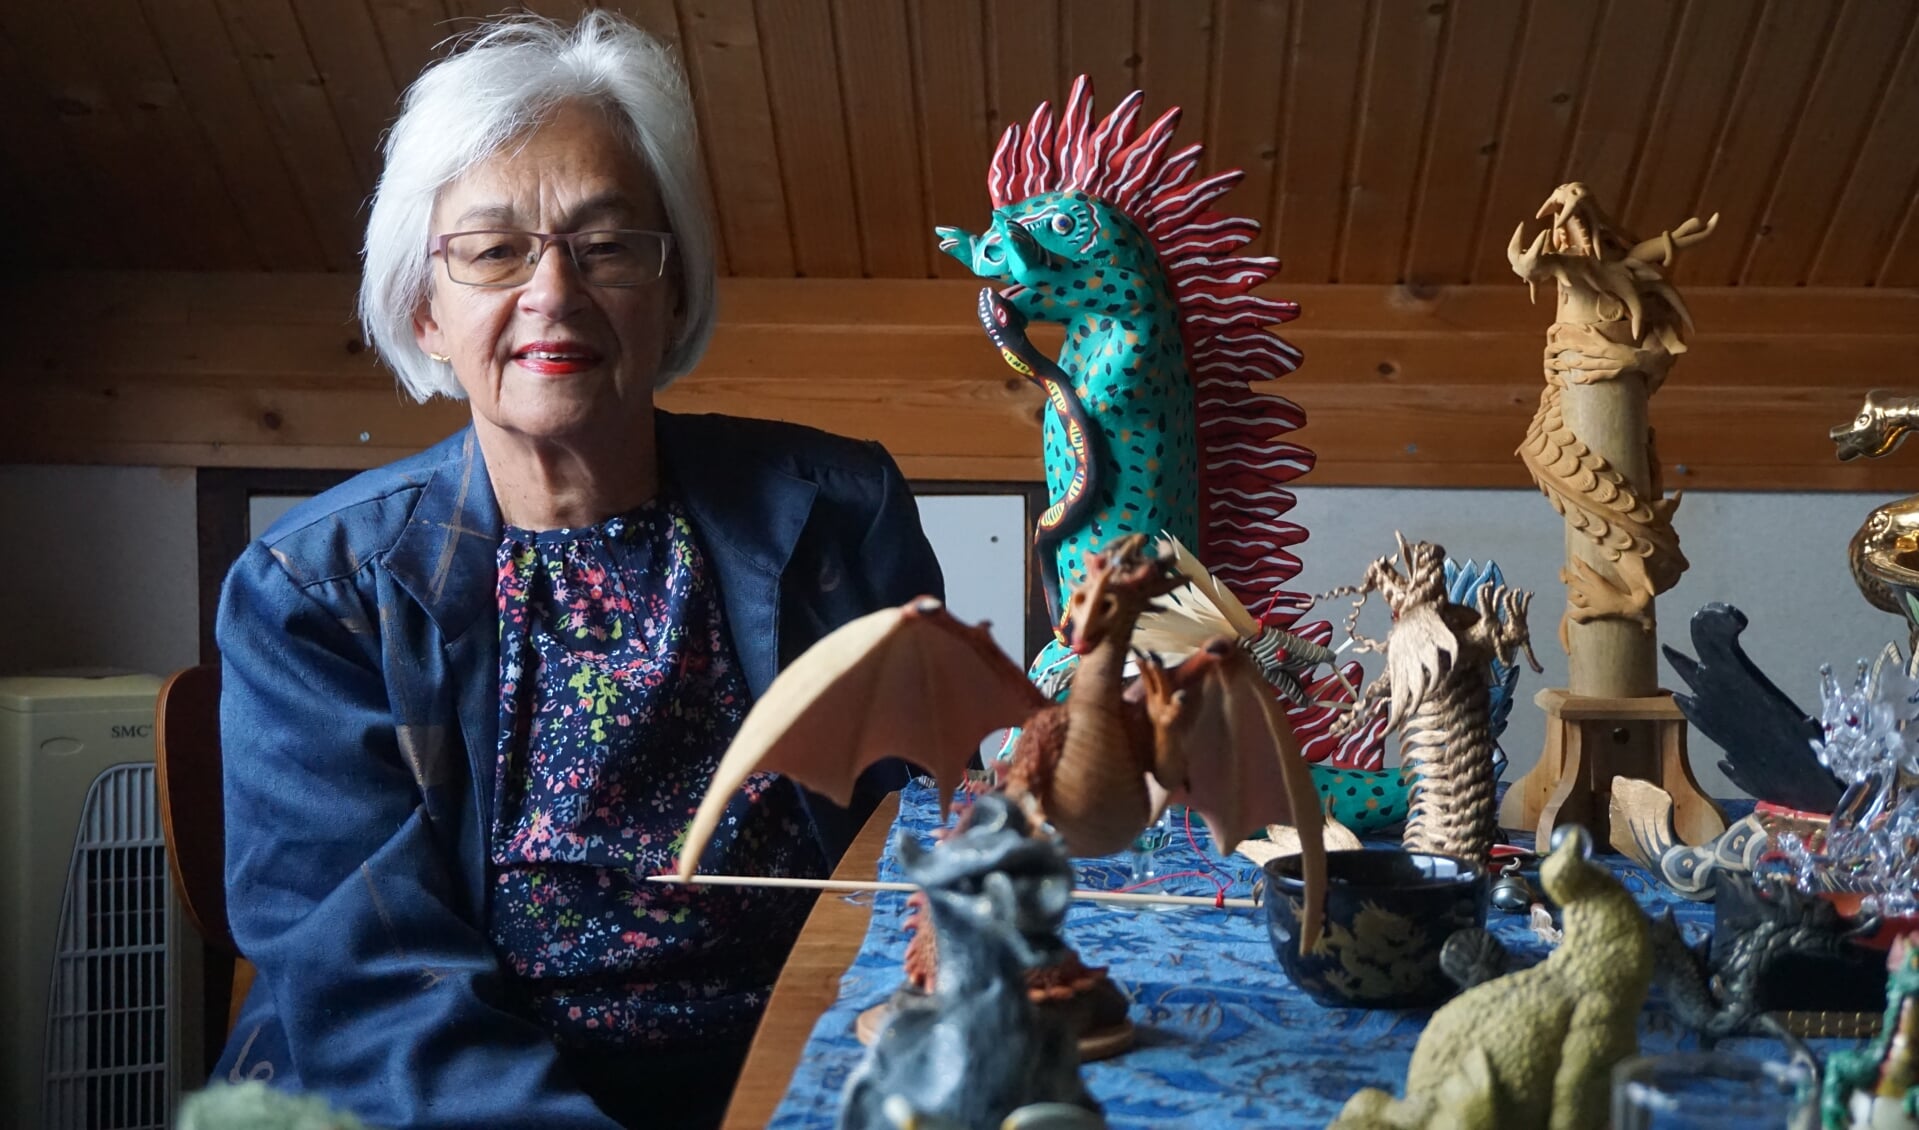 Sonja uit Veghel exposeert haar verzameling draken.